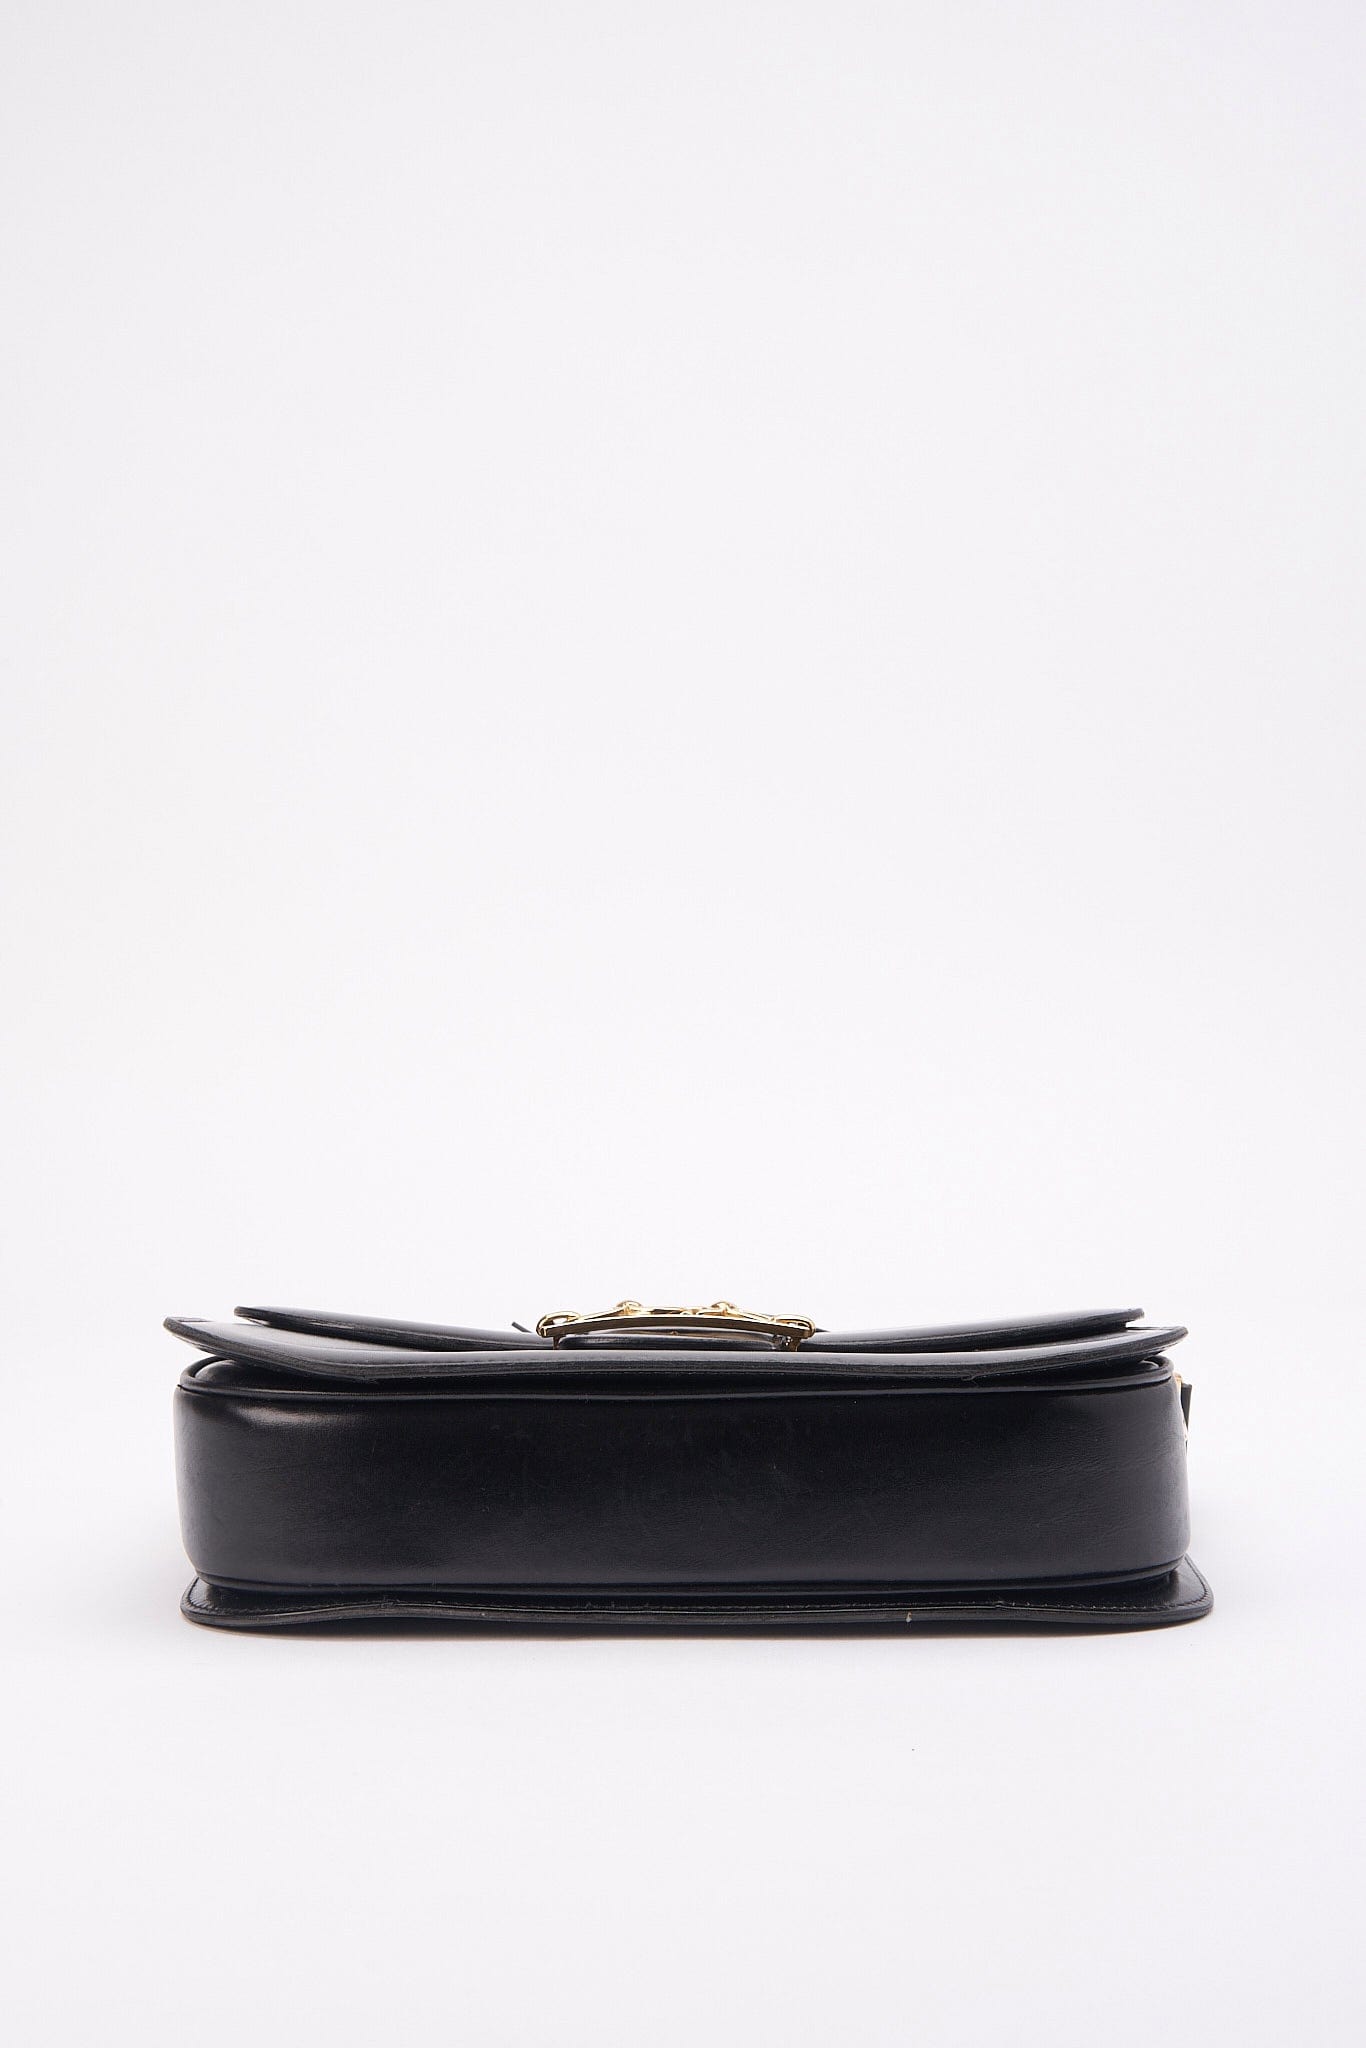 Vintage Celine Black Leather Box Bag